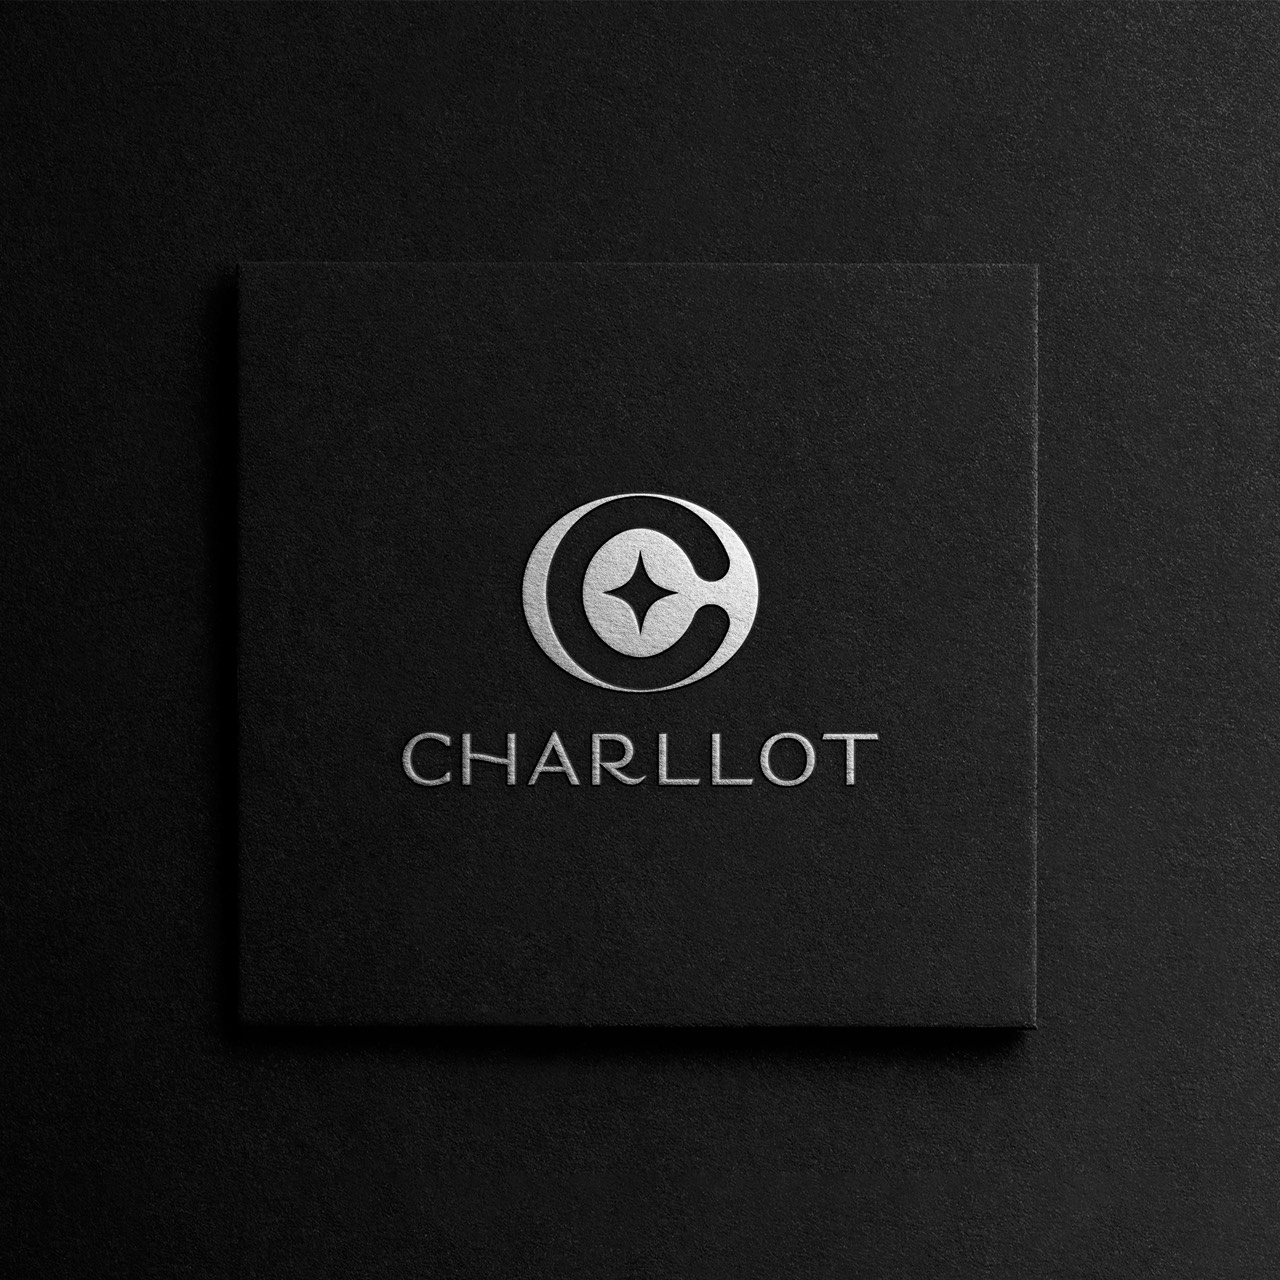 Thời trang Charllot design và hành trình truyền cảm hứng “mặc đẹp để thành công” - ảnh 1